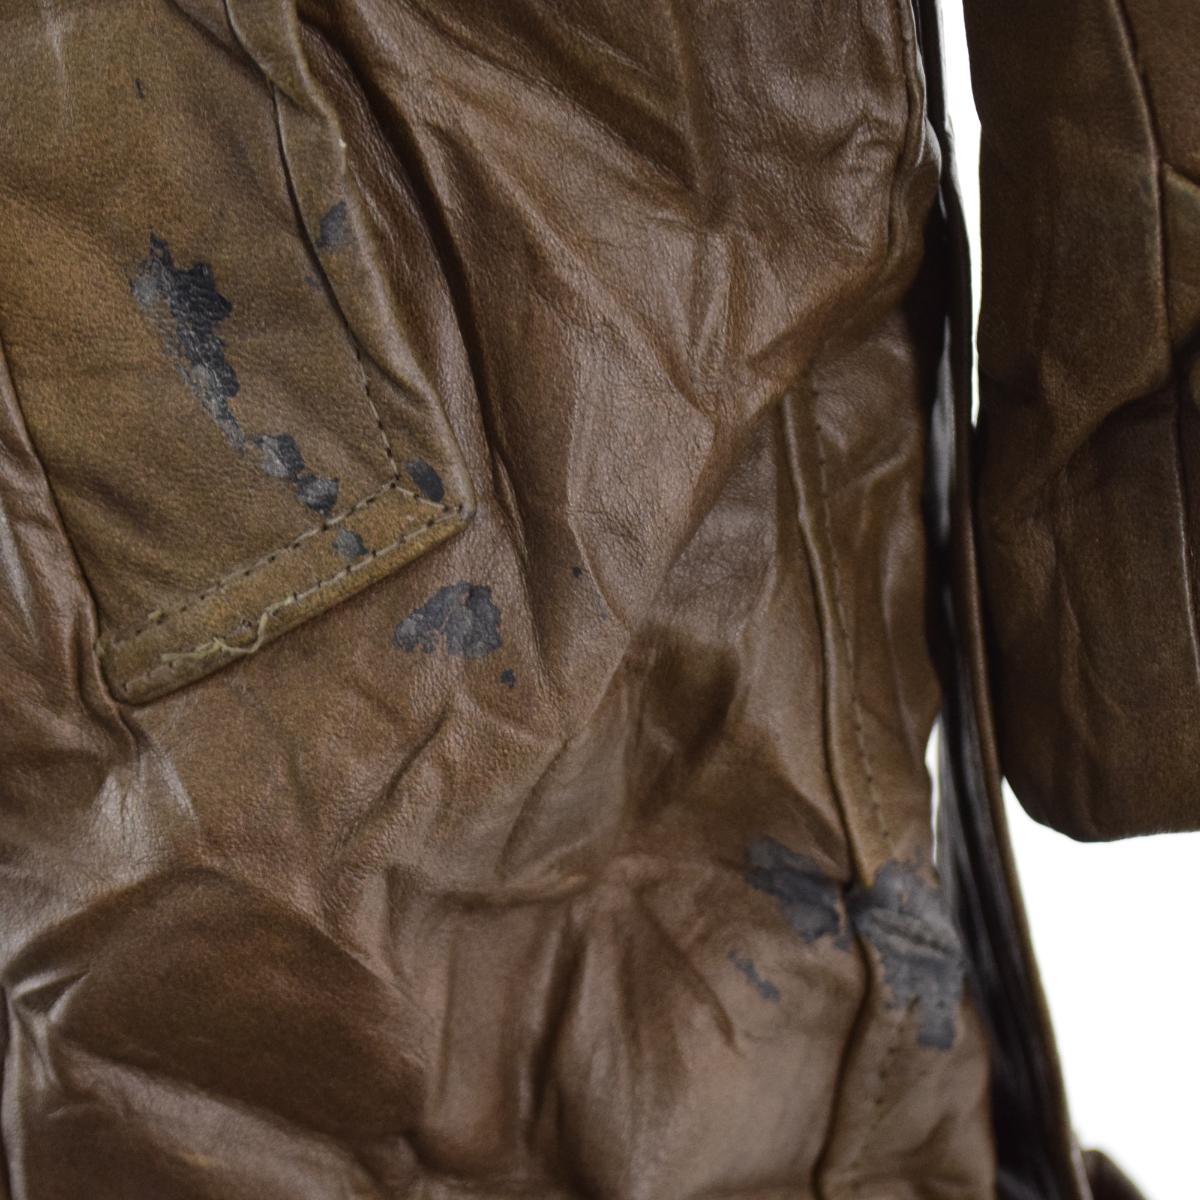  б/у одежда 60 годы Schott SCHOTT кожа пальто мужской M Vintage /eaa222801 [LP2311]